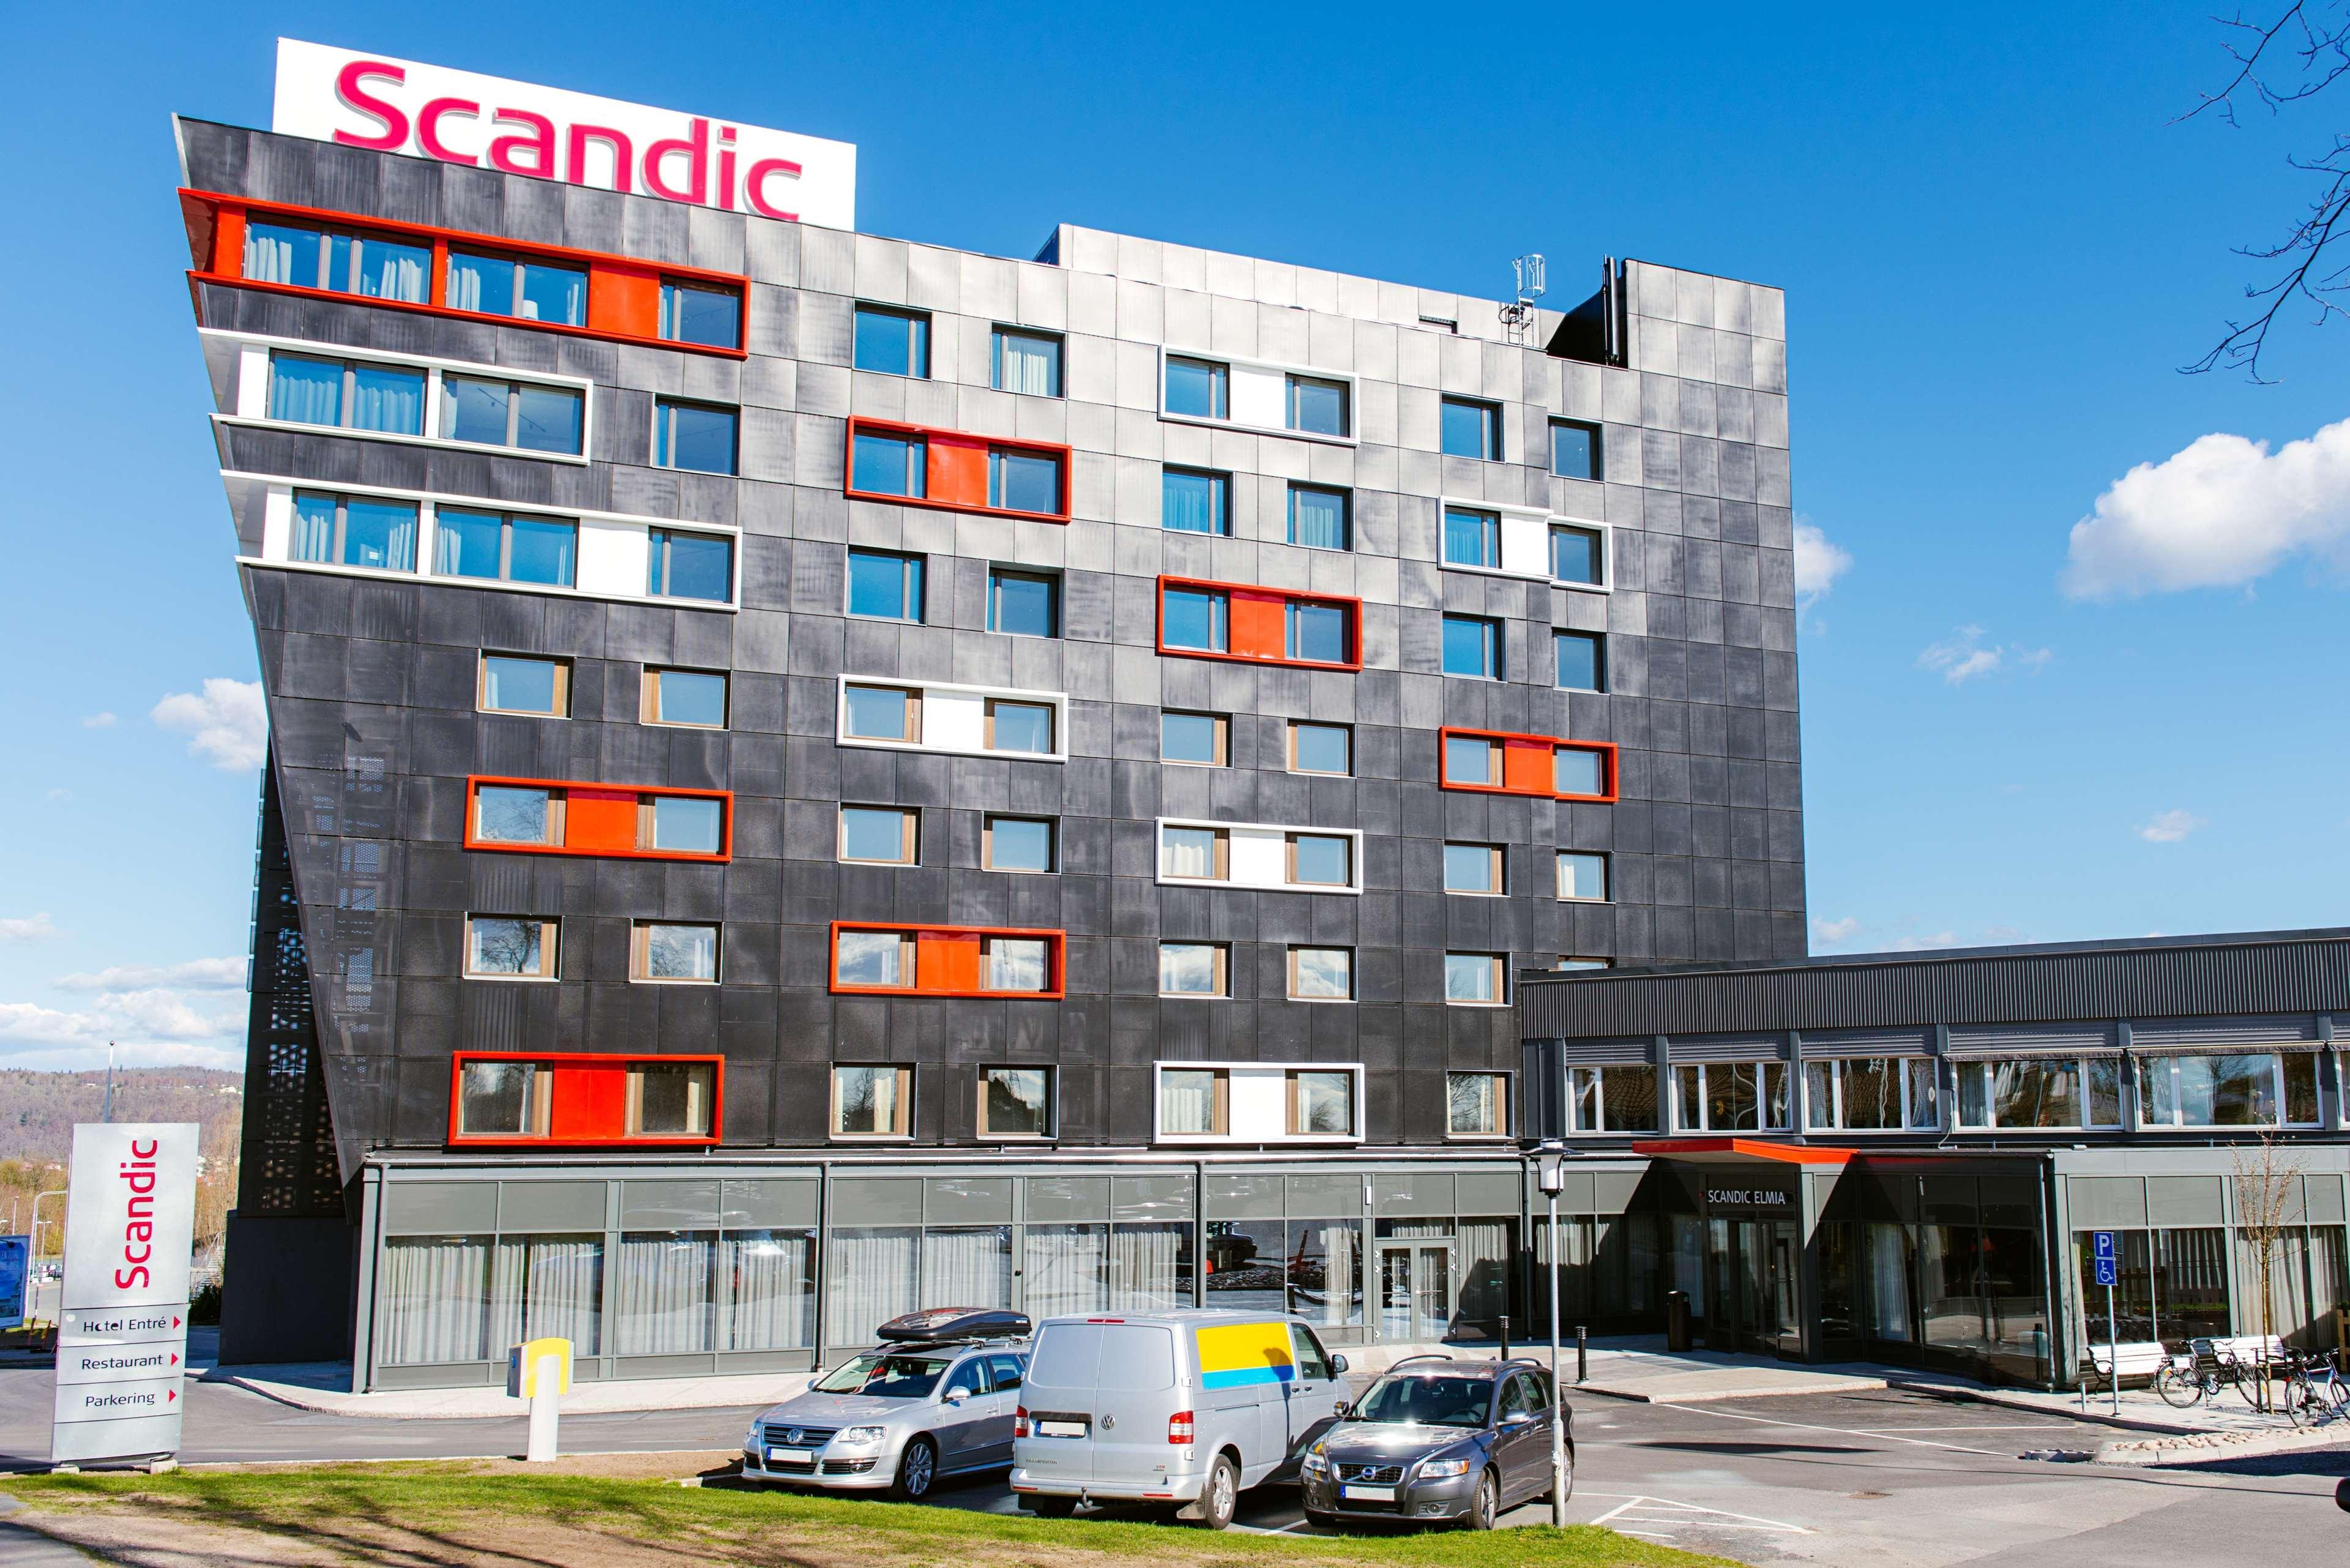 Scandic. Scandic Hotels. Scandic отель Швеция. Scandic в Финляндии. Все виды Scandic.